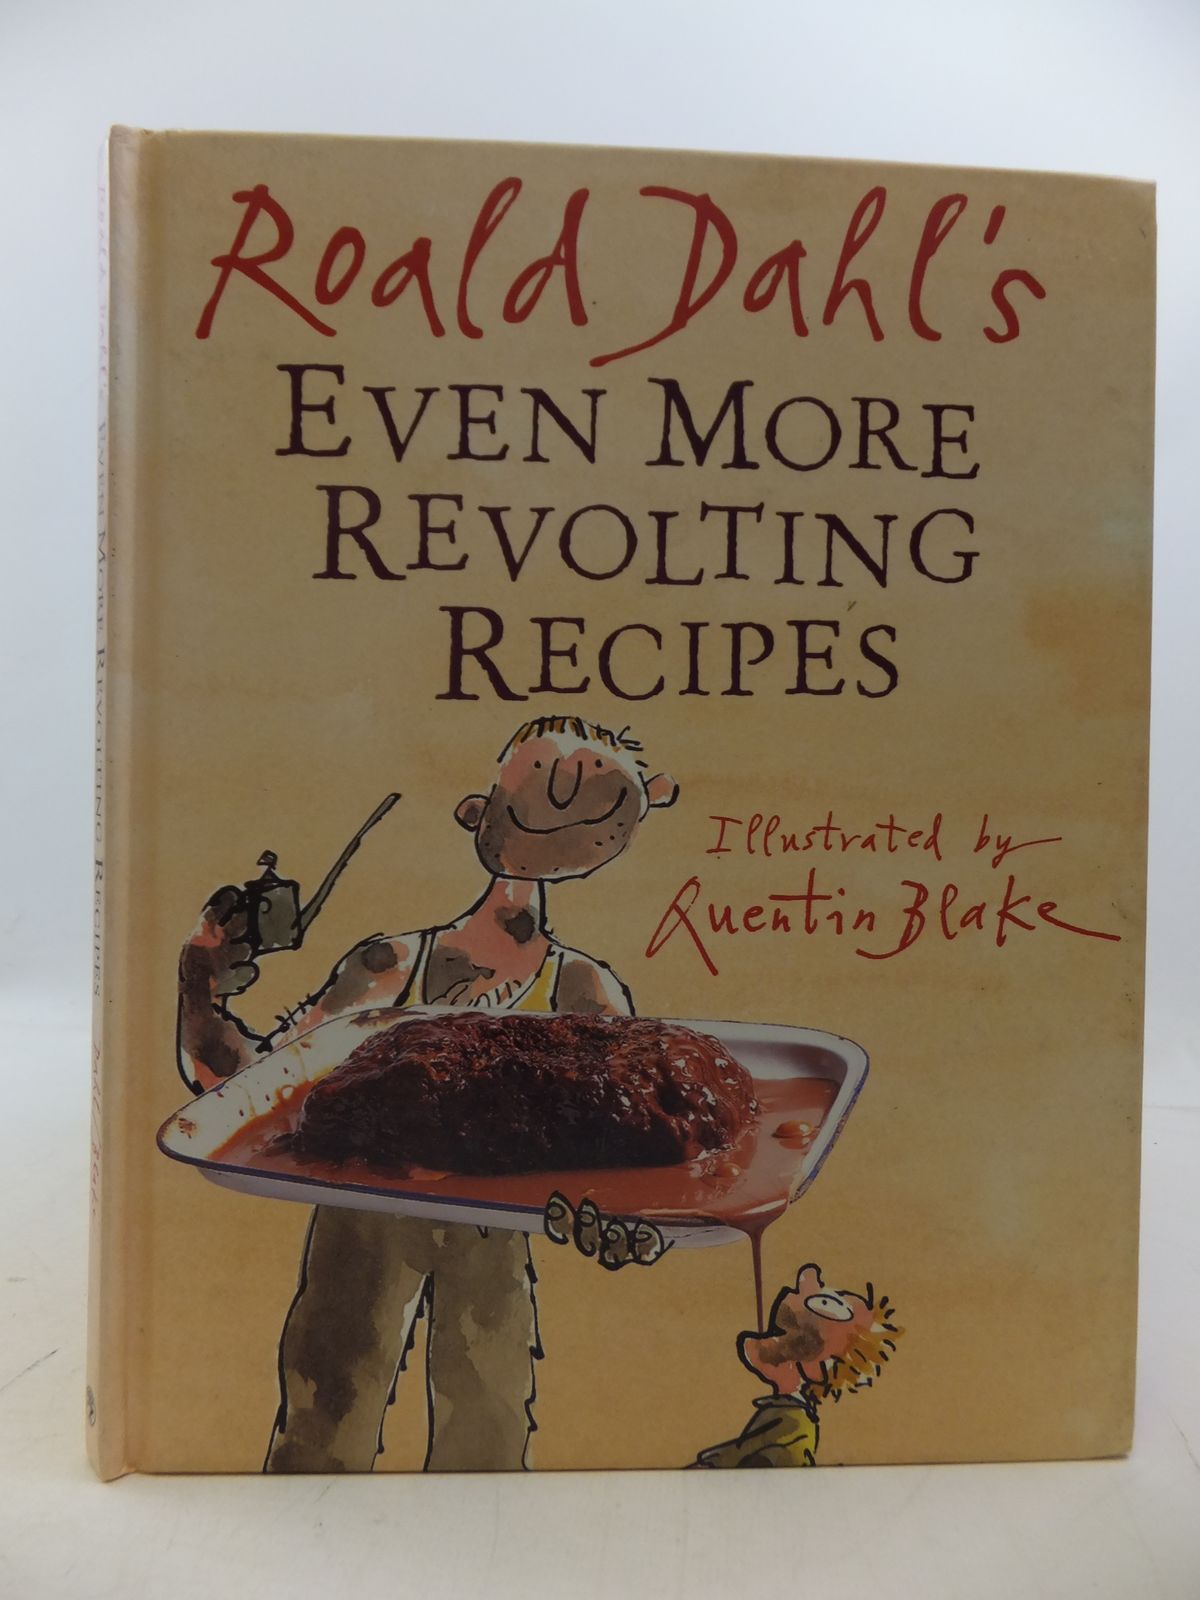 Roald Dahls Revolting Recipes Epub-Ebook